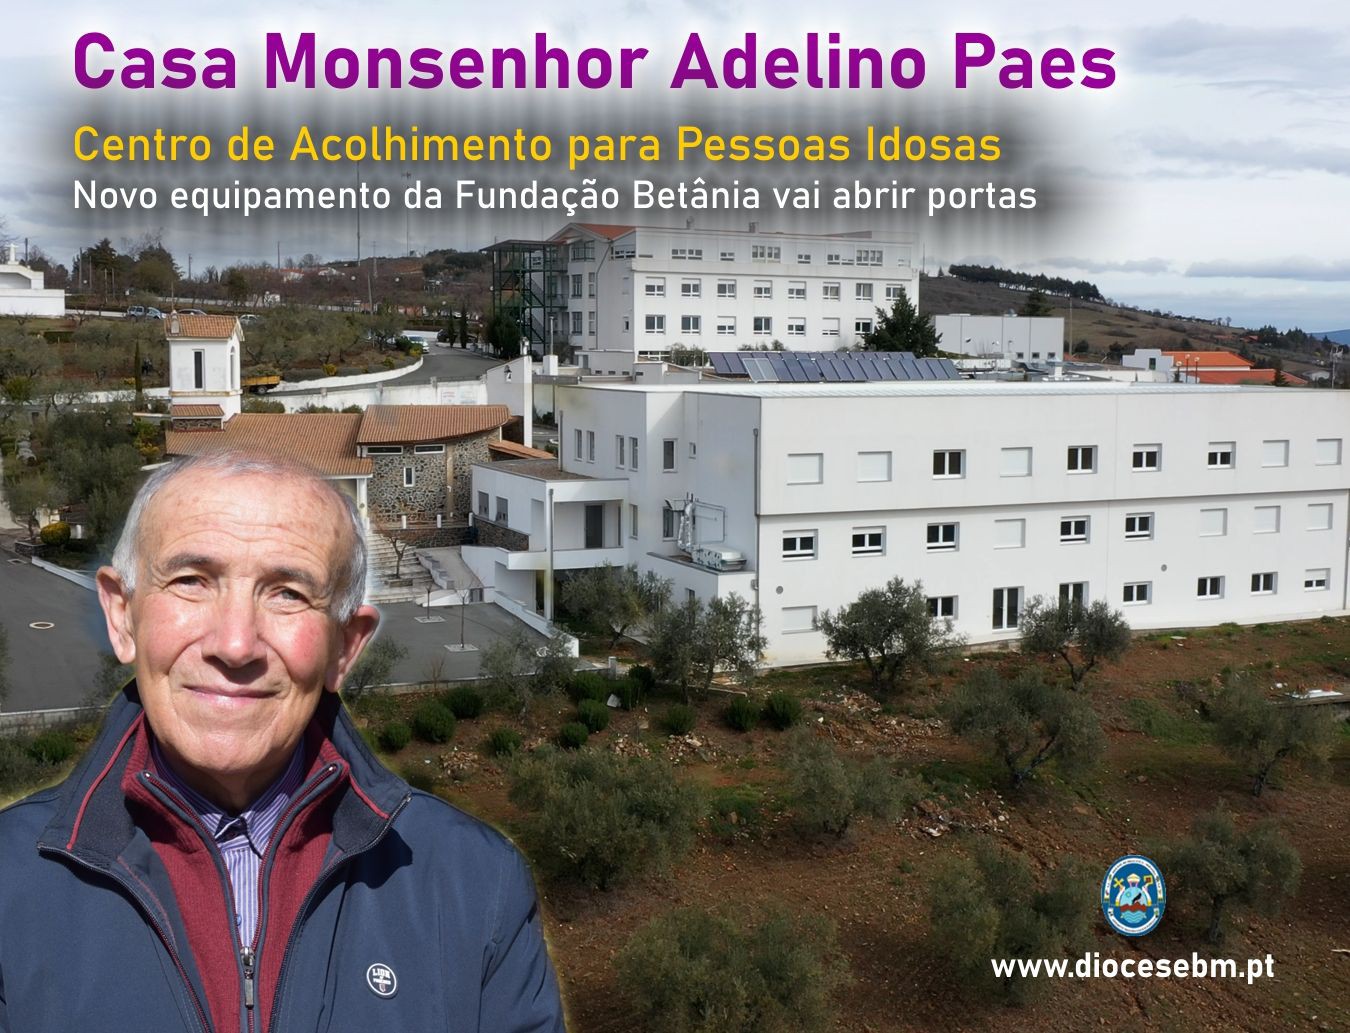 Adelino Paes vai dar nome ao novo equipamento da Fundação Betânia